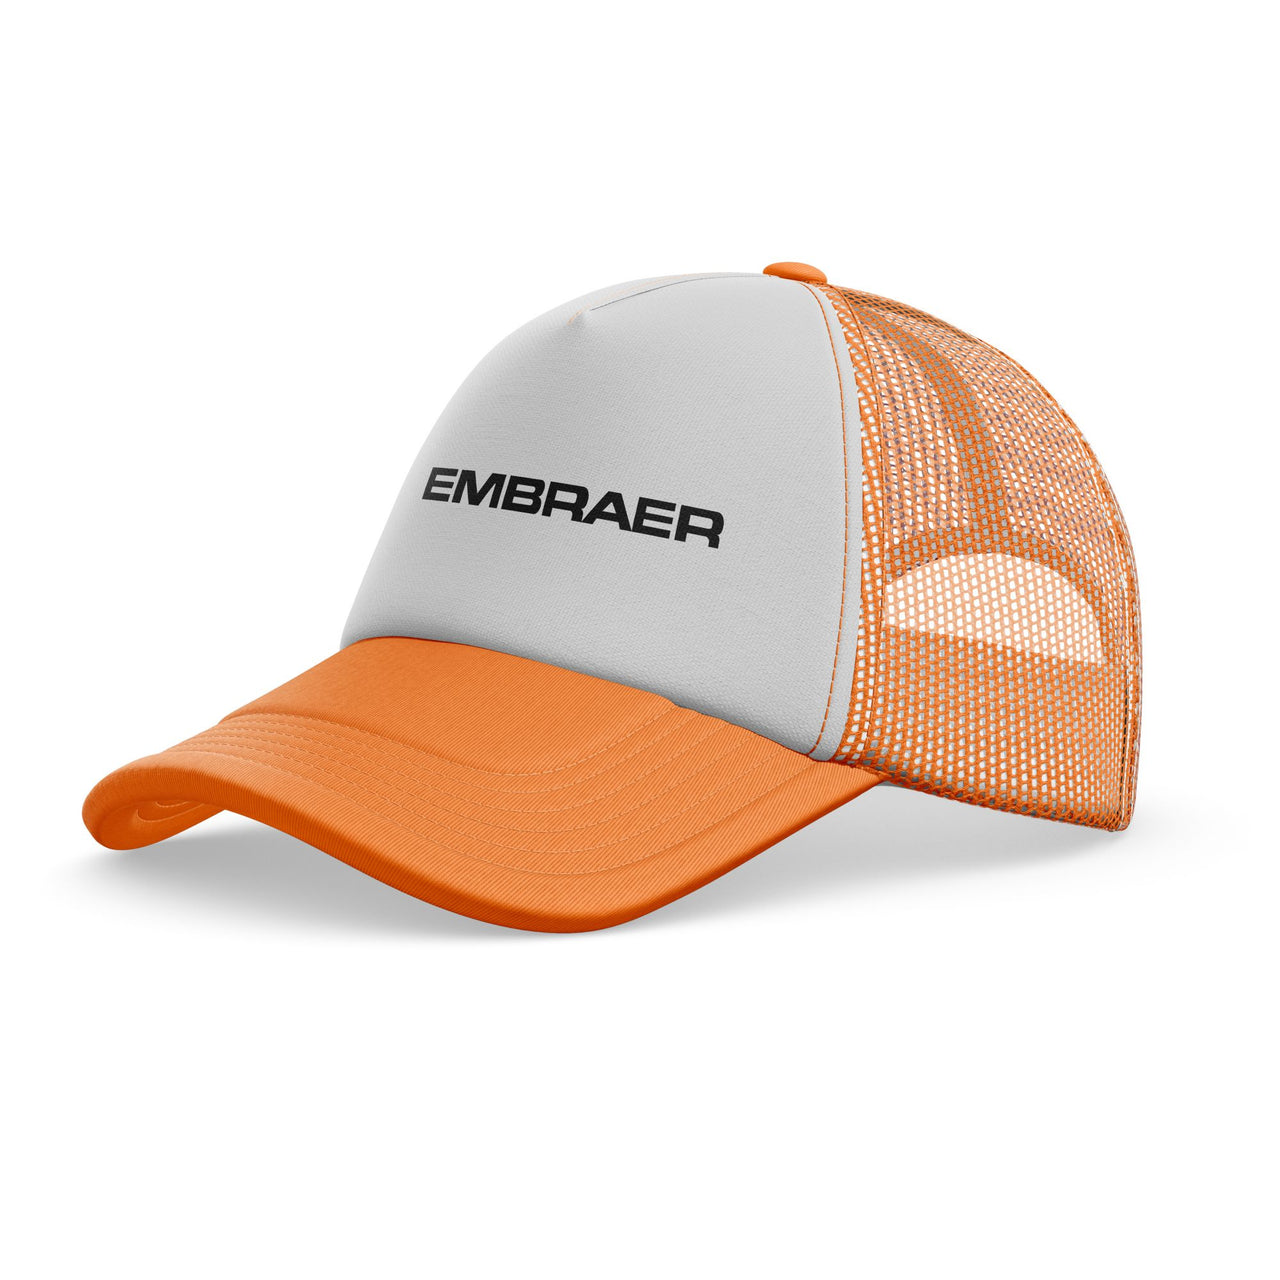 Embraer & Text Designed Trucker Caps & Hats